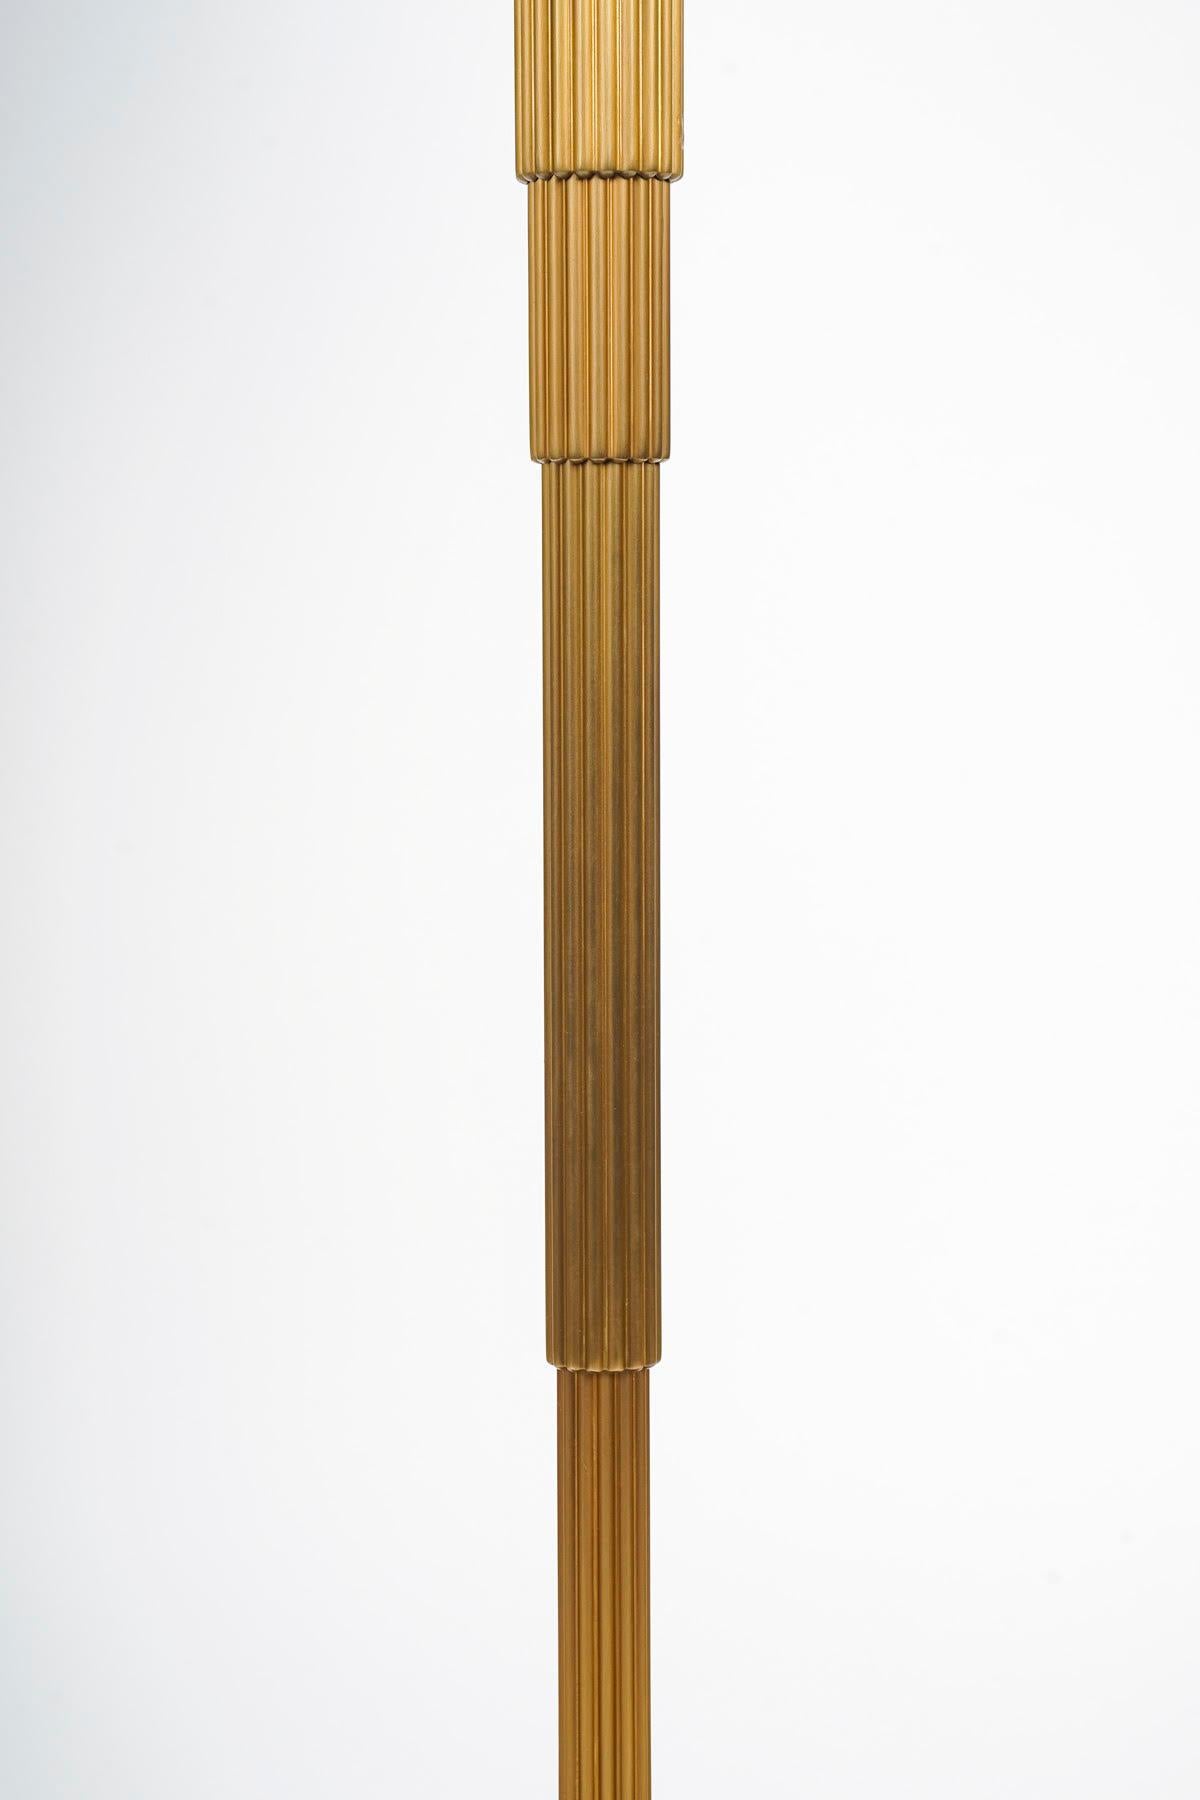 Tischlampen aus vergoldeter Bronze mit geriffeltem Querschnitt und quadratischem Sockel im Stil des Art déco.

Vergoldete Bronzetischlampe des 20. Jahrhunderts mit kanneliertem Querschnitt und quadratischem Sockel im Stil des Art déco, um 1980-1990